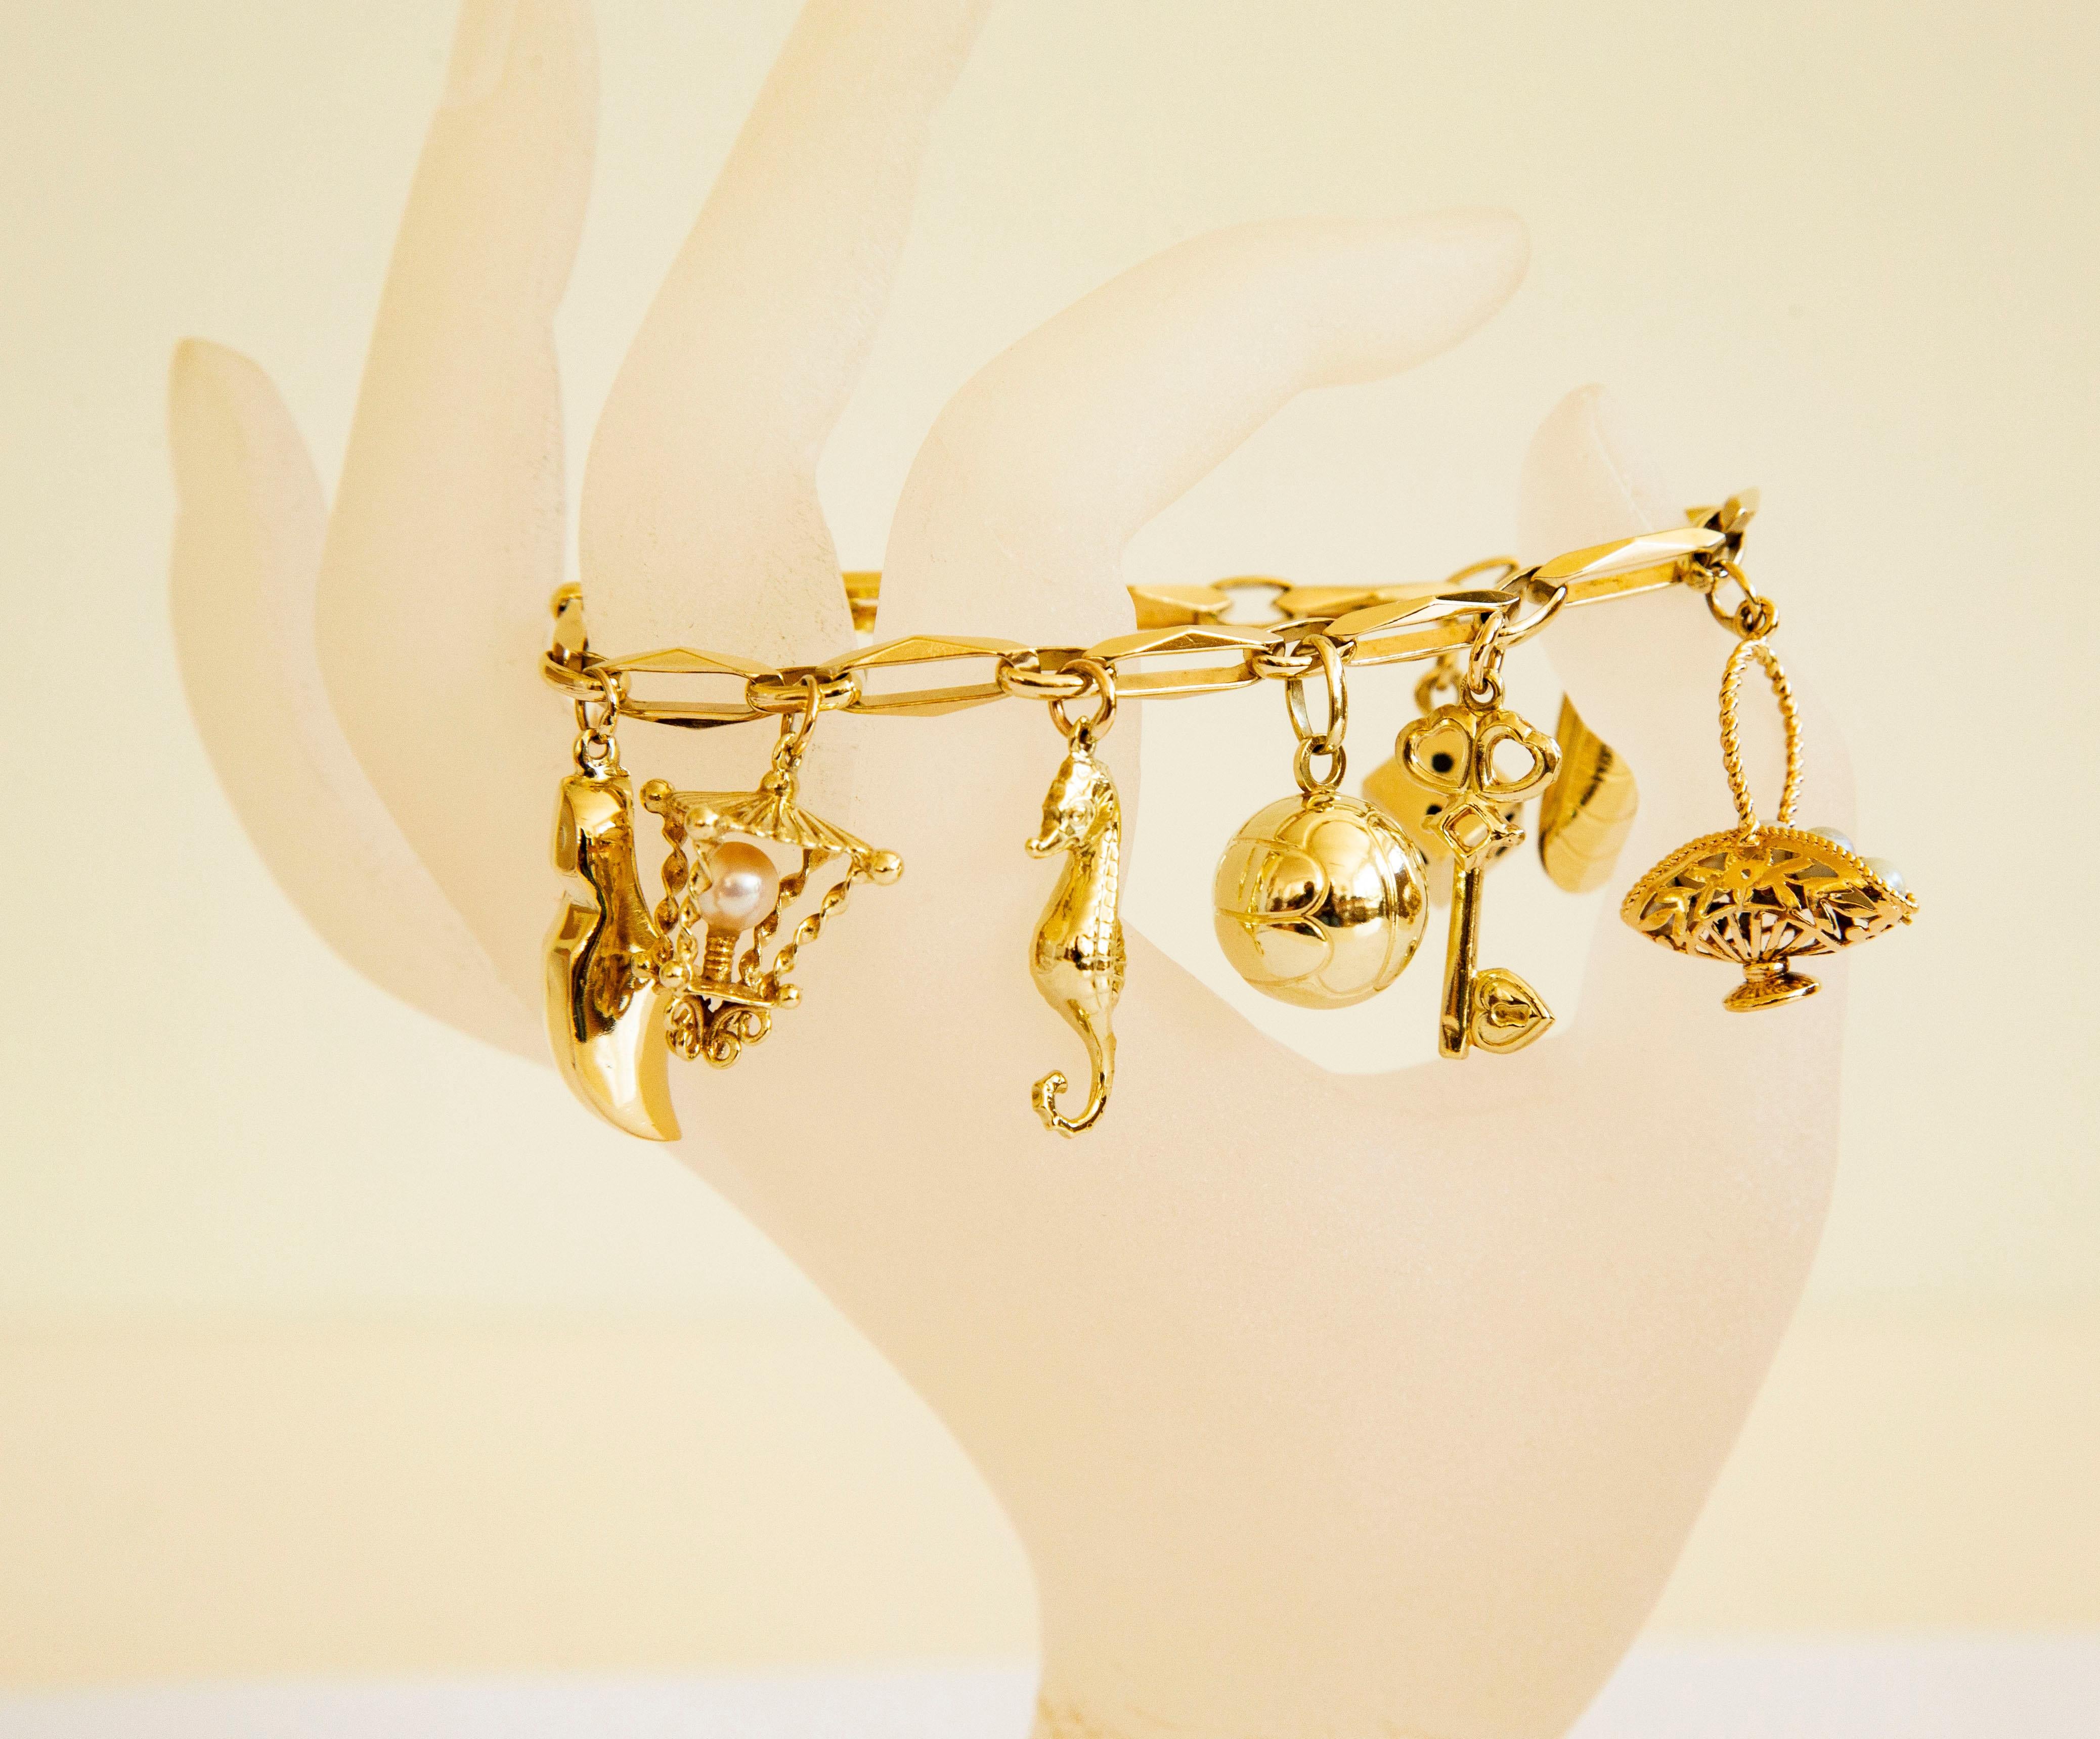 Ein Vintage-Armband aus 14 Karat Gelbgold mit 10 Charms, darunter ein Jagdhorn, ein Herz, ein Holzschuh, eine Laterne, ein Seepferdchen, ein Ball, ein Schlüssel, ein Korb mit fünf Perlen, eine Muschel und ein Würfel. 
Das Armband wurde in der Mitte